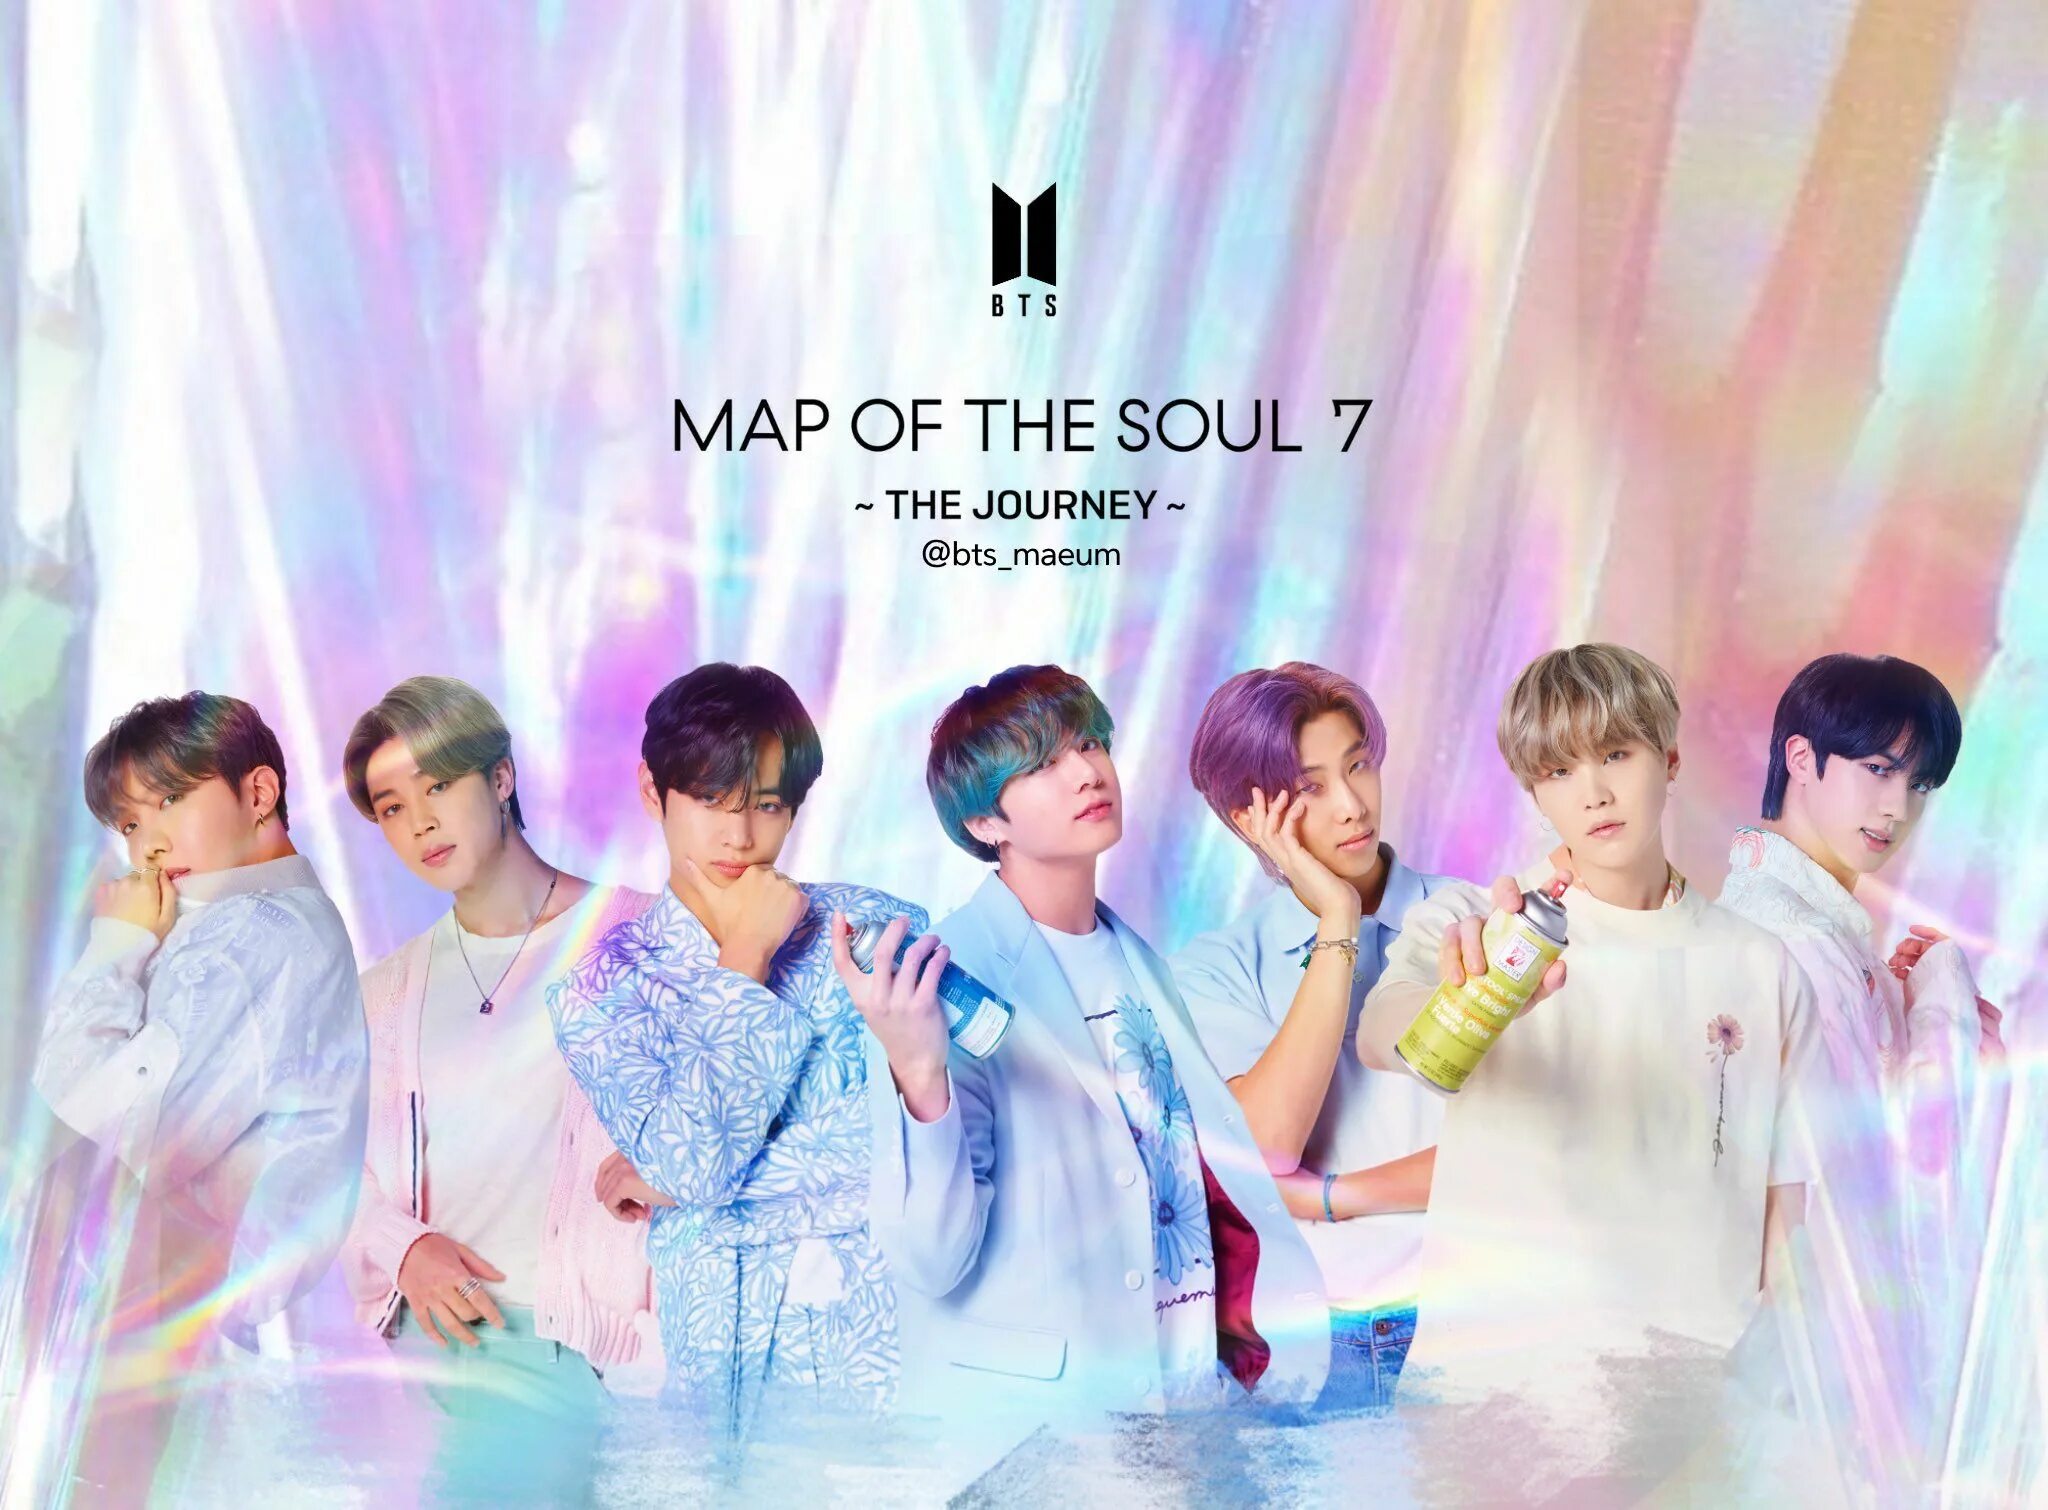 BTS 2022. БТС обложка для группы. BTS группа корейская. БТС 2020 Map of the Soul 7. Bts be песня